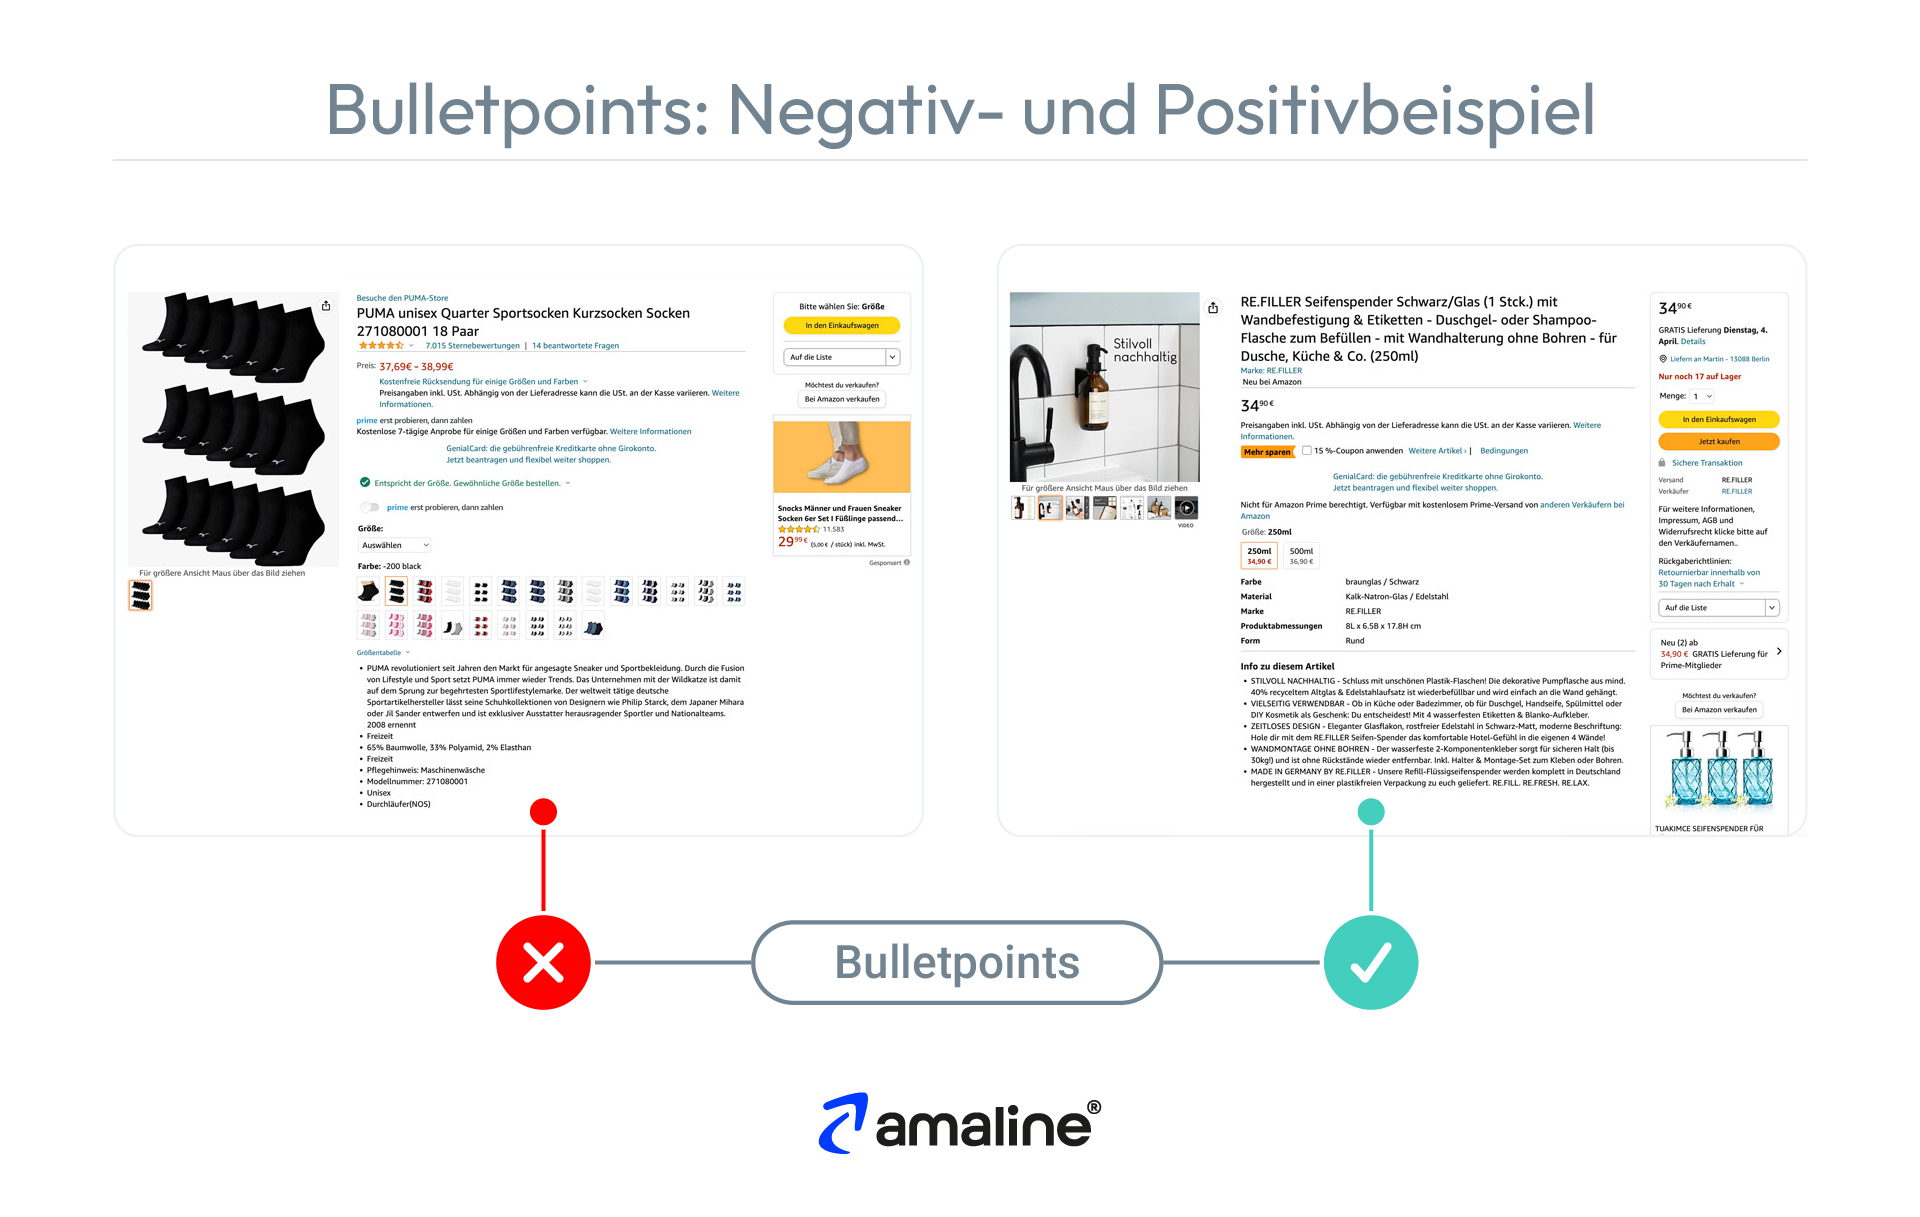 Die Grafik zeigt ein Negativ- und ein Positiv-Beispiel für die Optimierung von Amazon Bulletpoints.